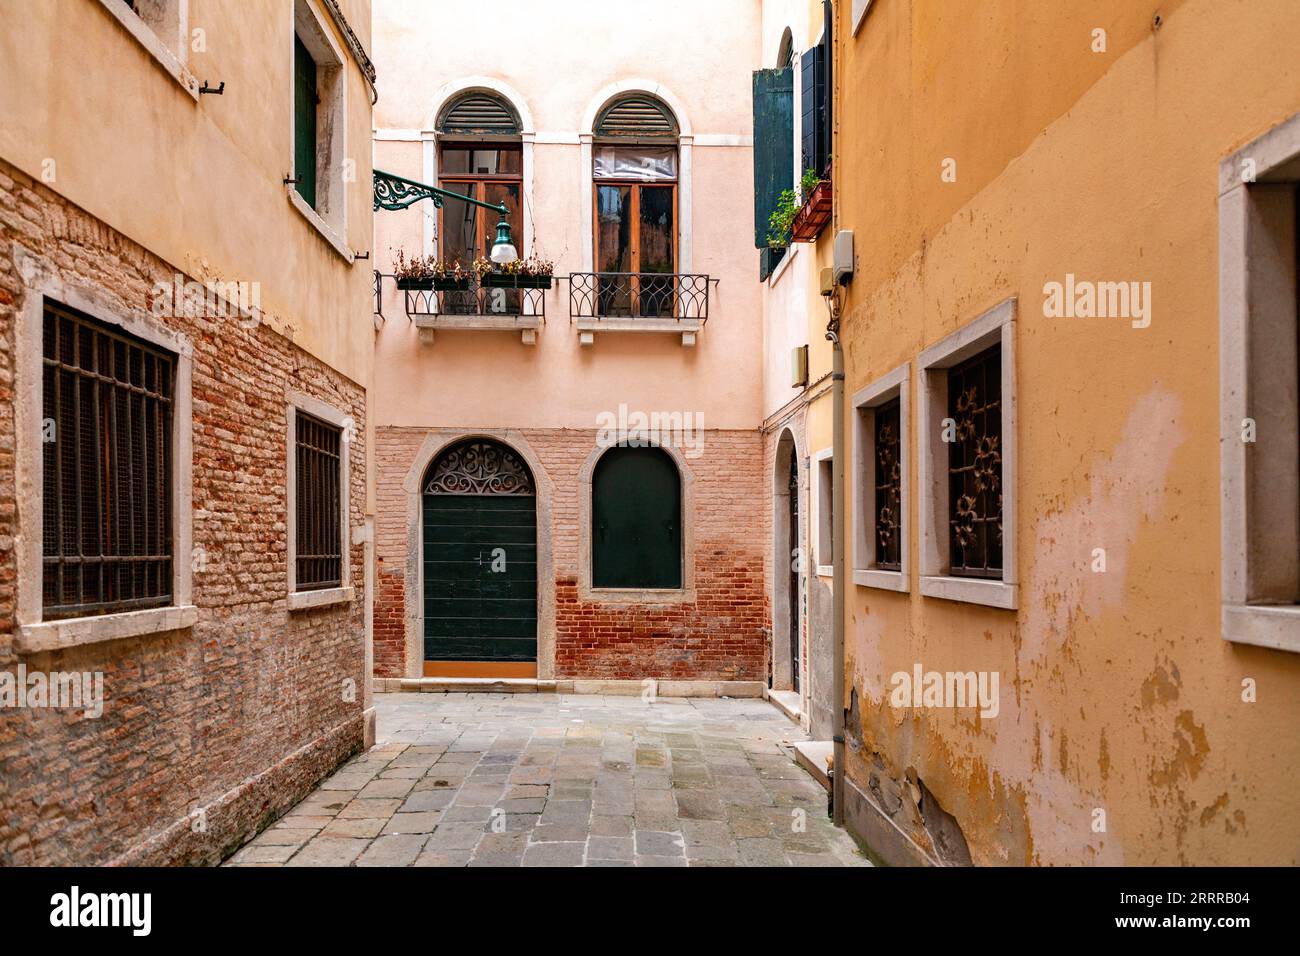 Typisch venezianische Architektur und Blick auf die Straße von Venedig, Italien. Stockfoto